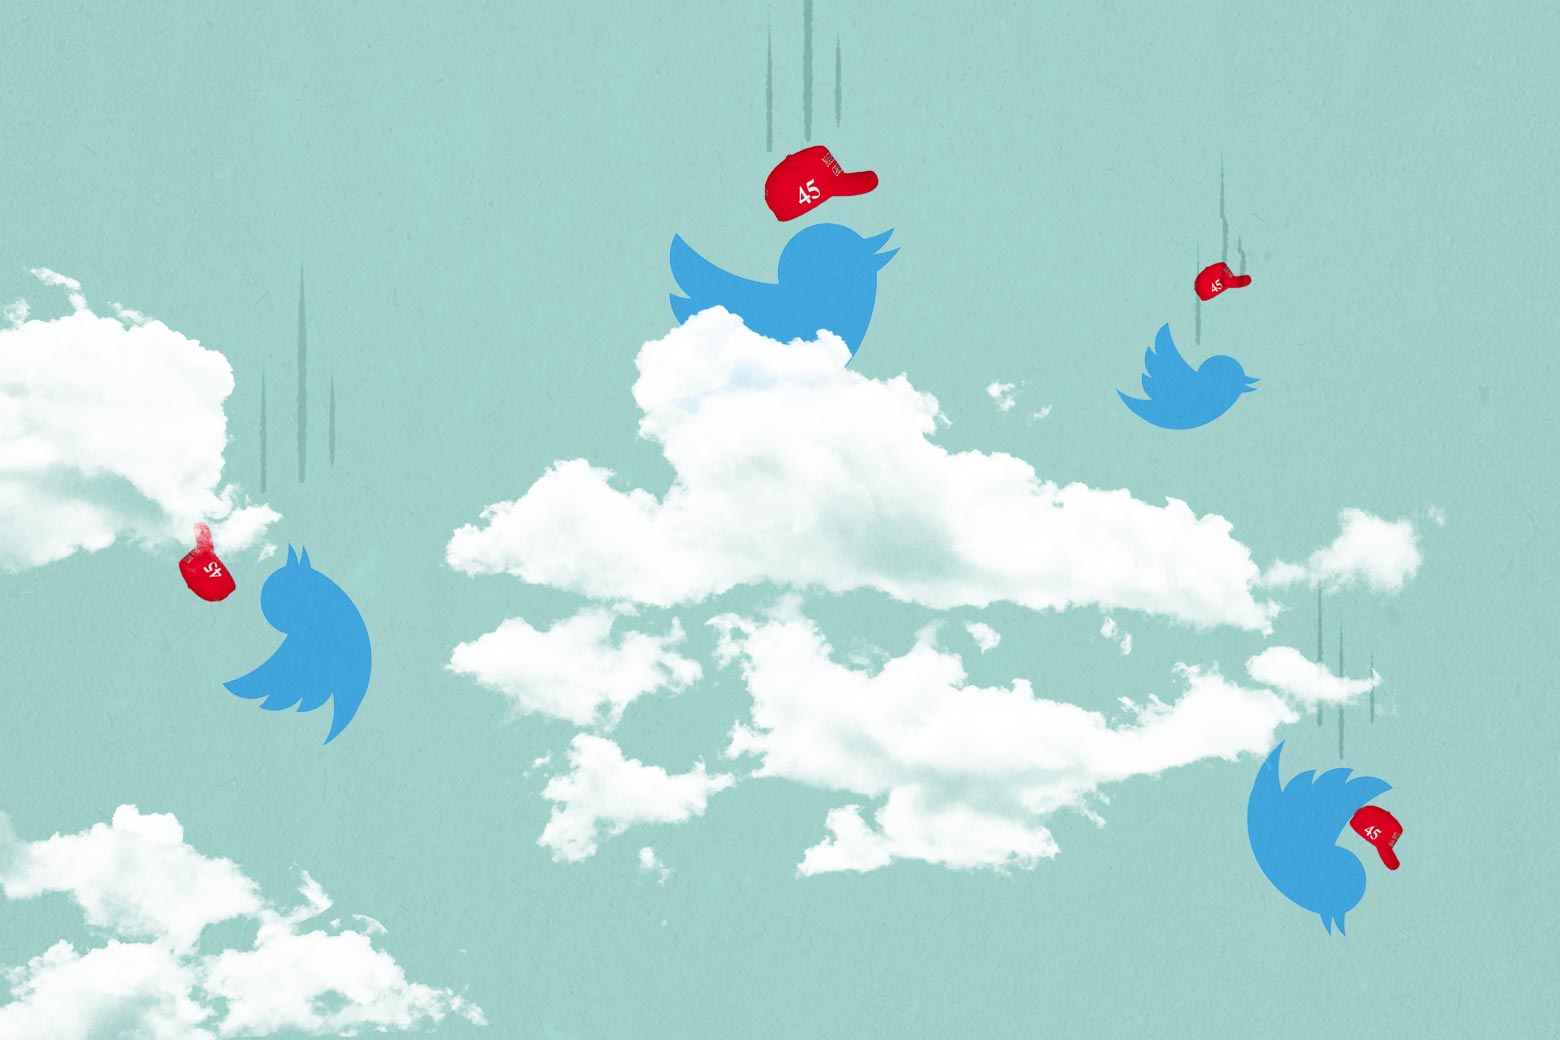 Plummeting Twitter birds wearing red 45 hats.